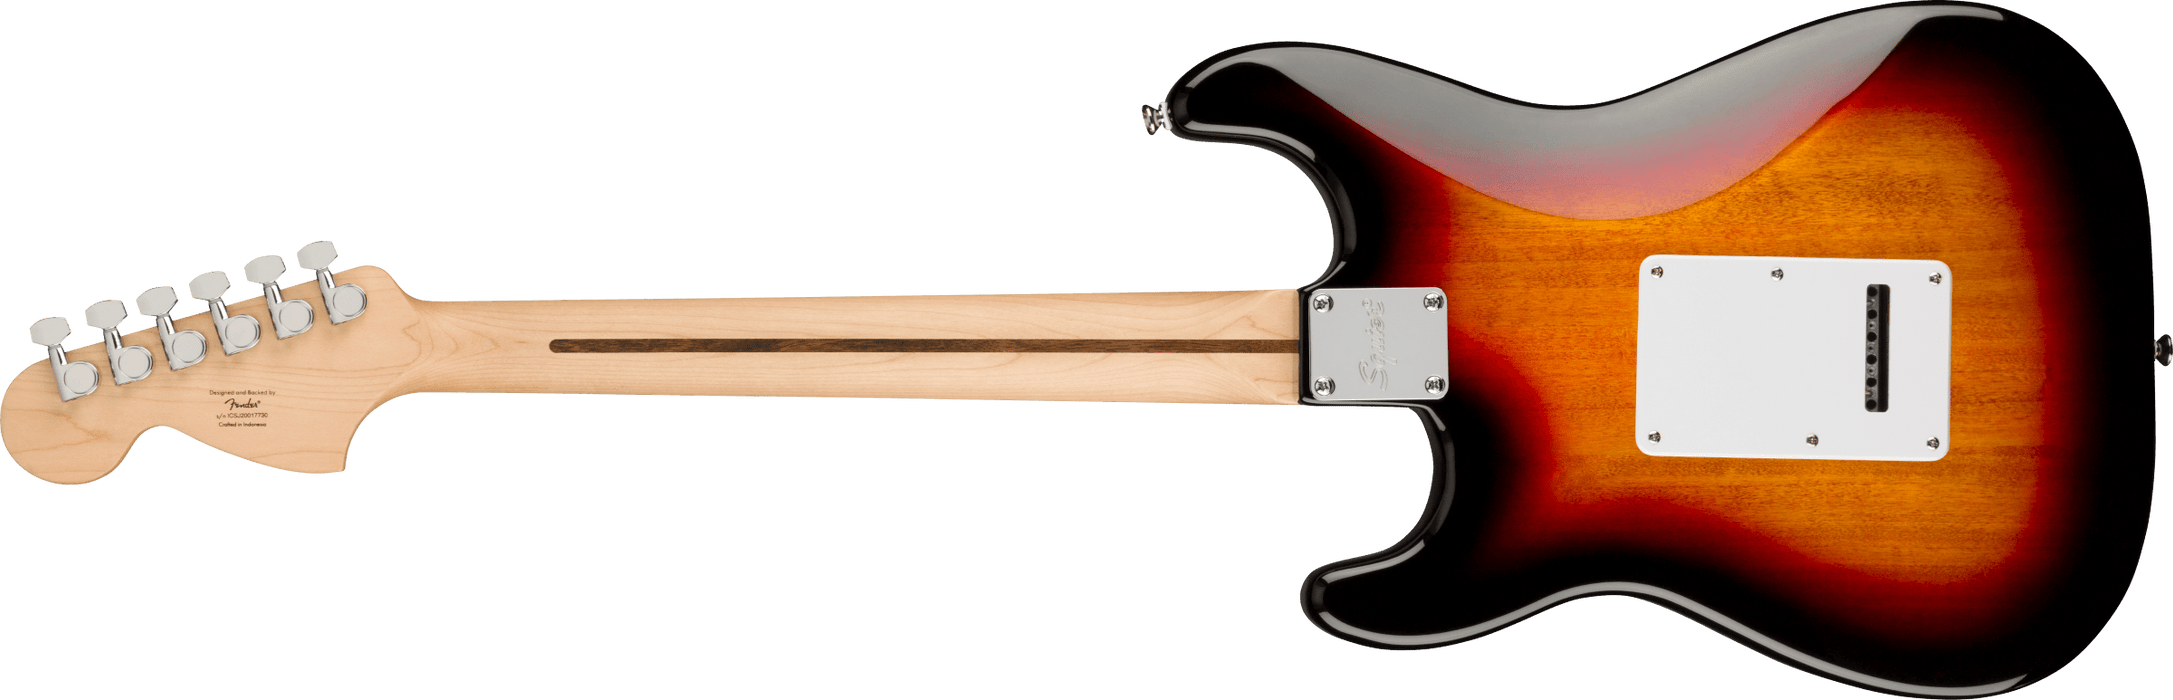 Fender Squier Affinity Series™ Stratocaster®, Laurel Fingerboard, White Pickguard, 3-Color Sunburst